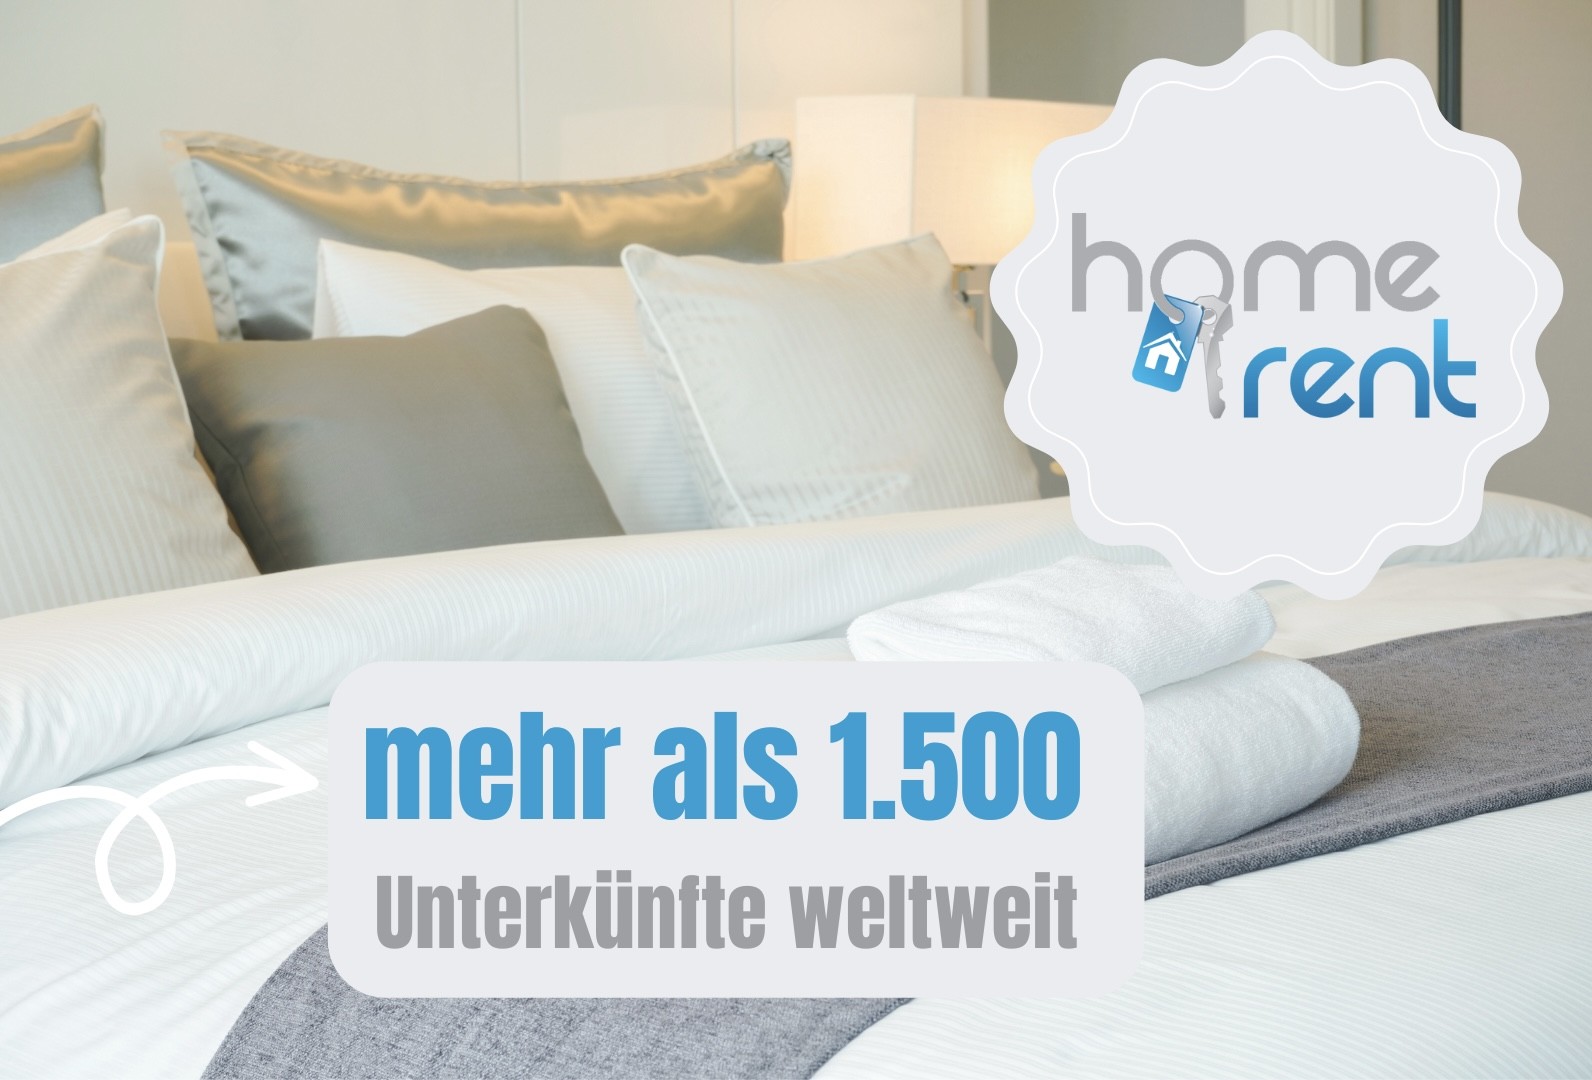 Ferienwohnungen Wetzlar und Umgebung Homerent Immobilien GmbH 35578 169157524964d363d15cfe5